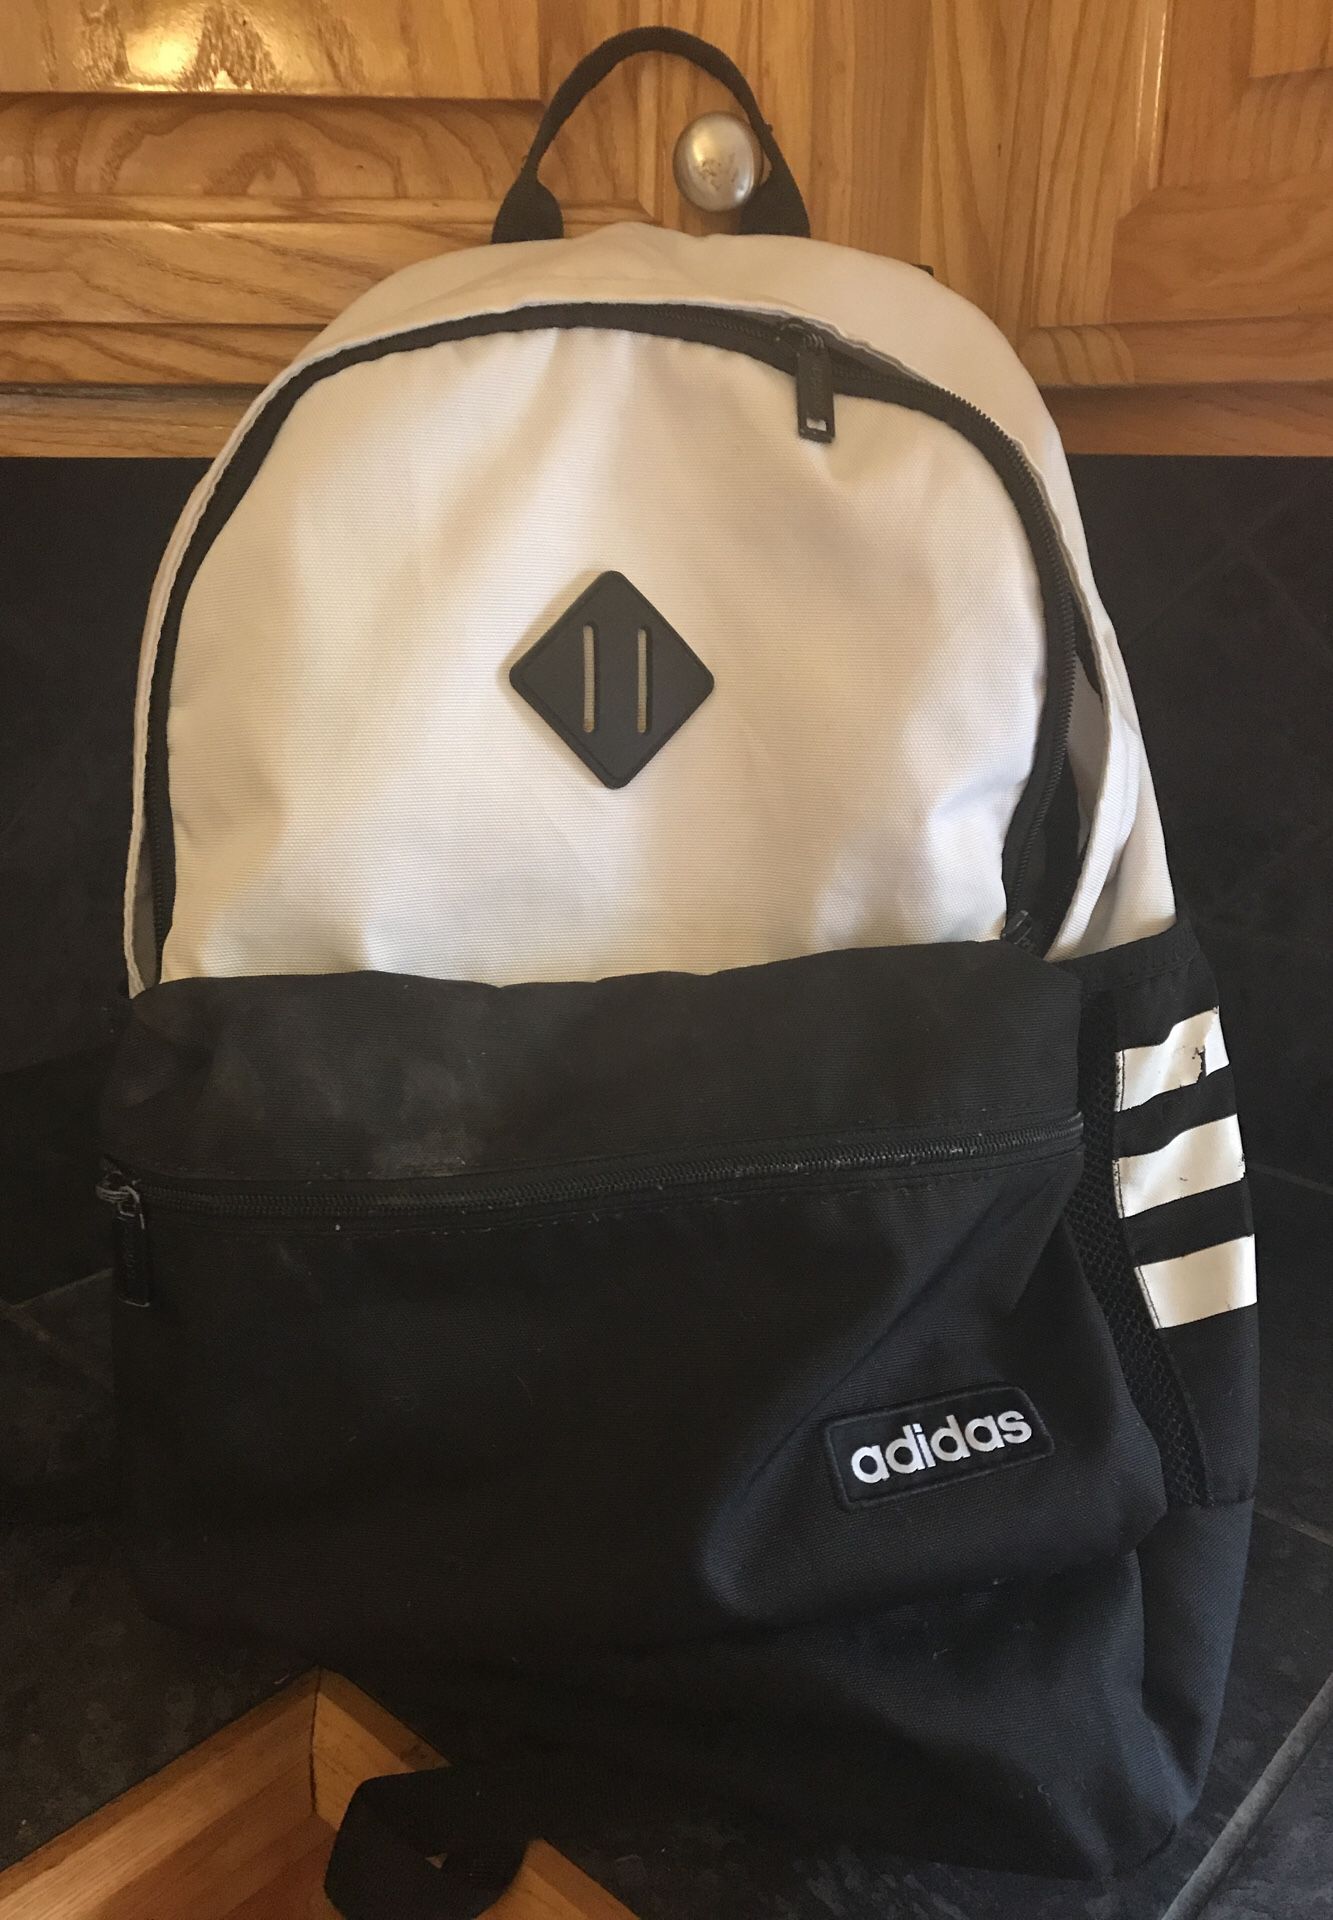 Adidas backpack used $15